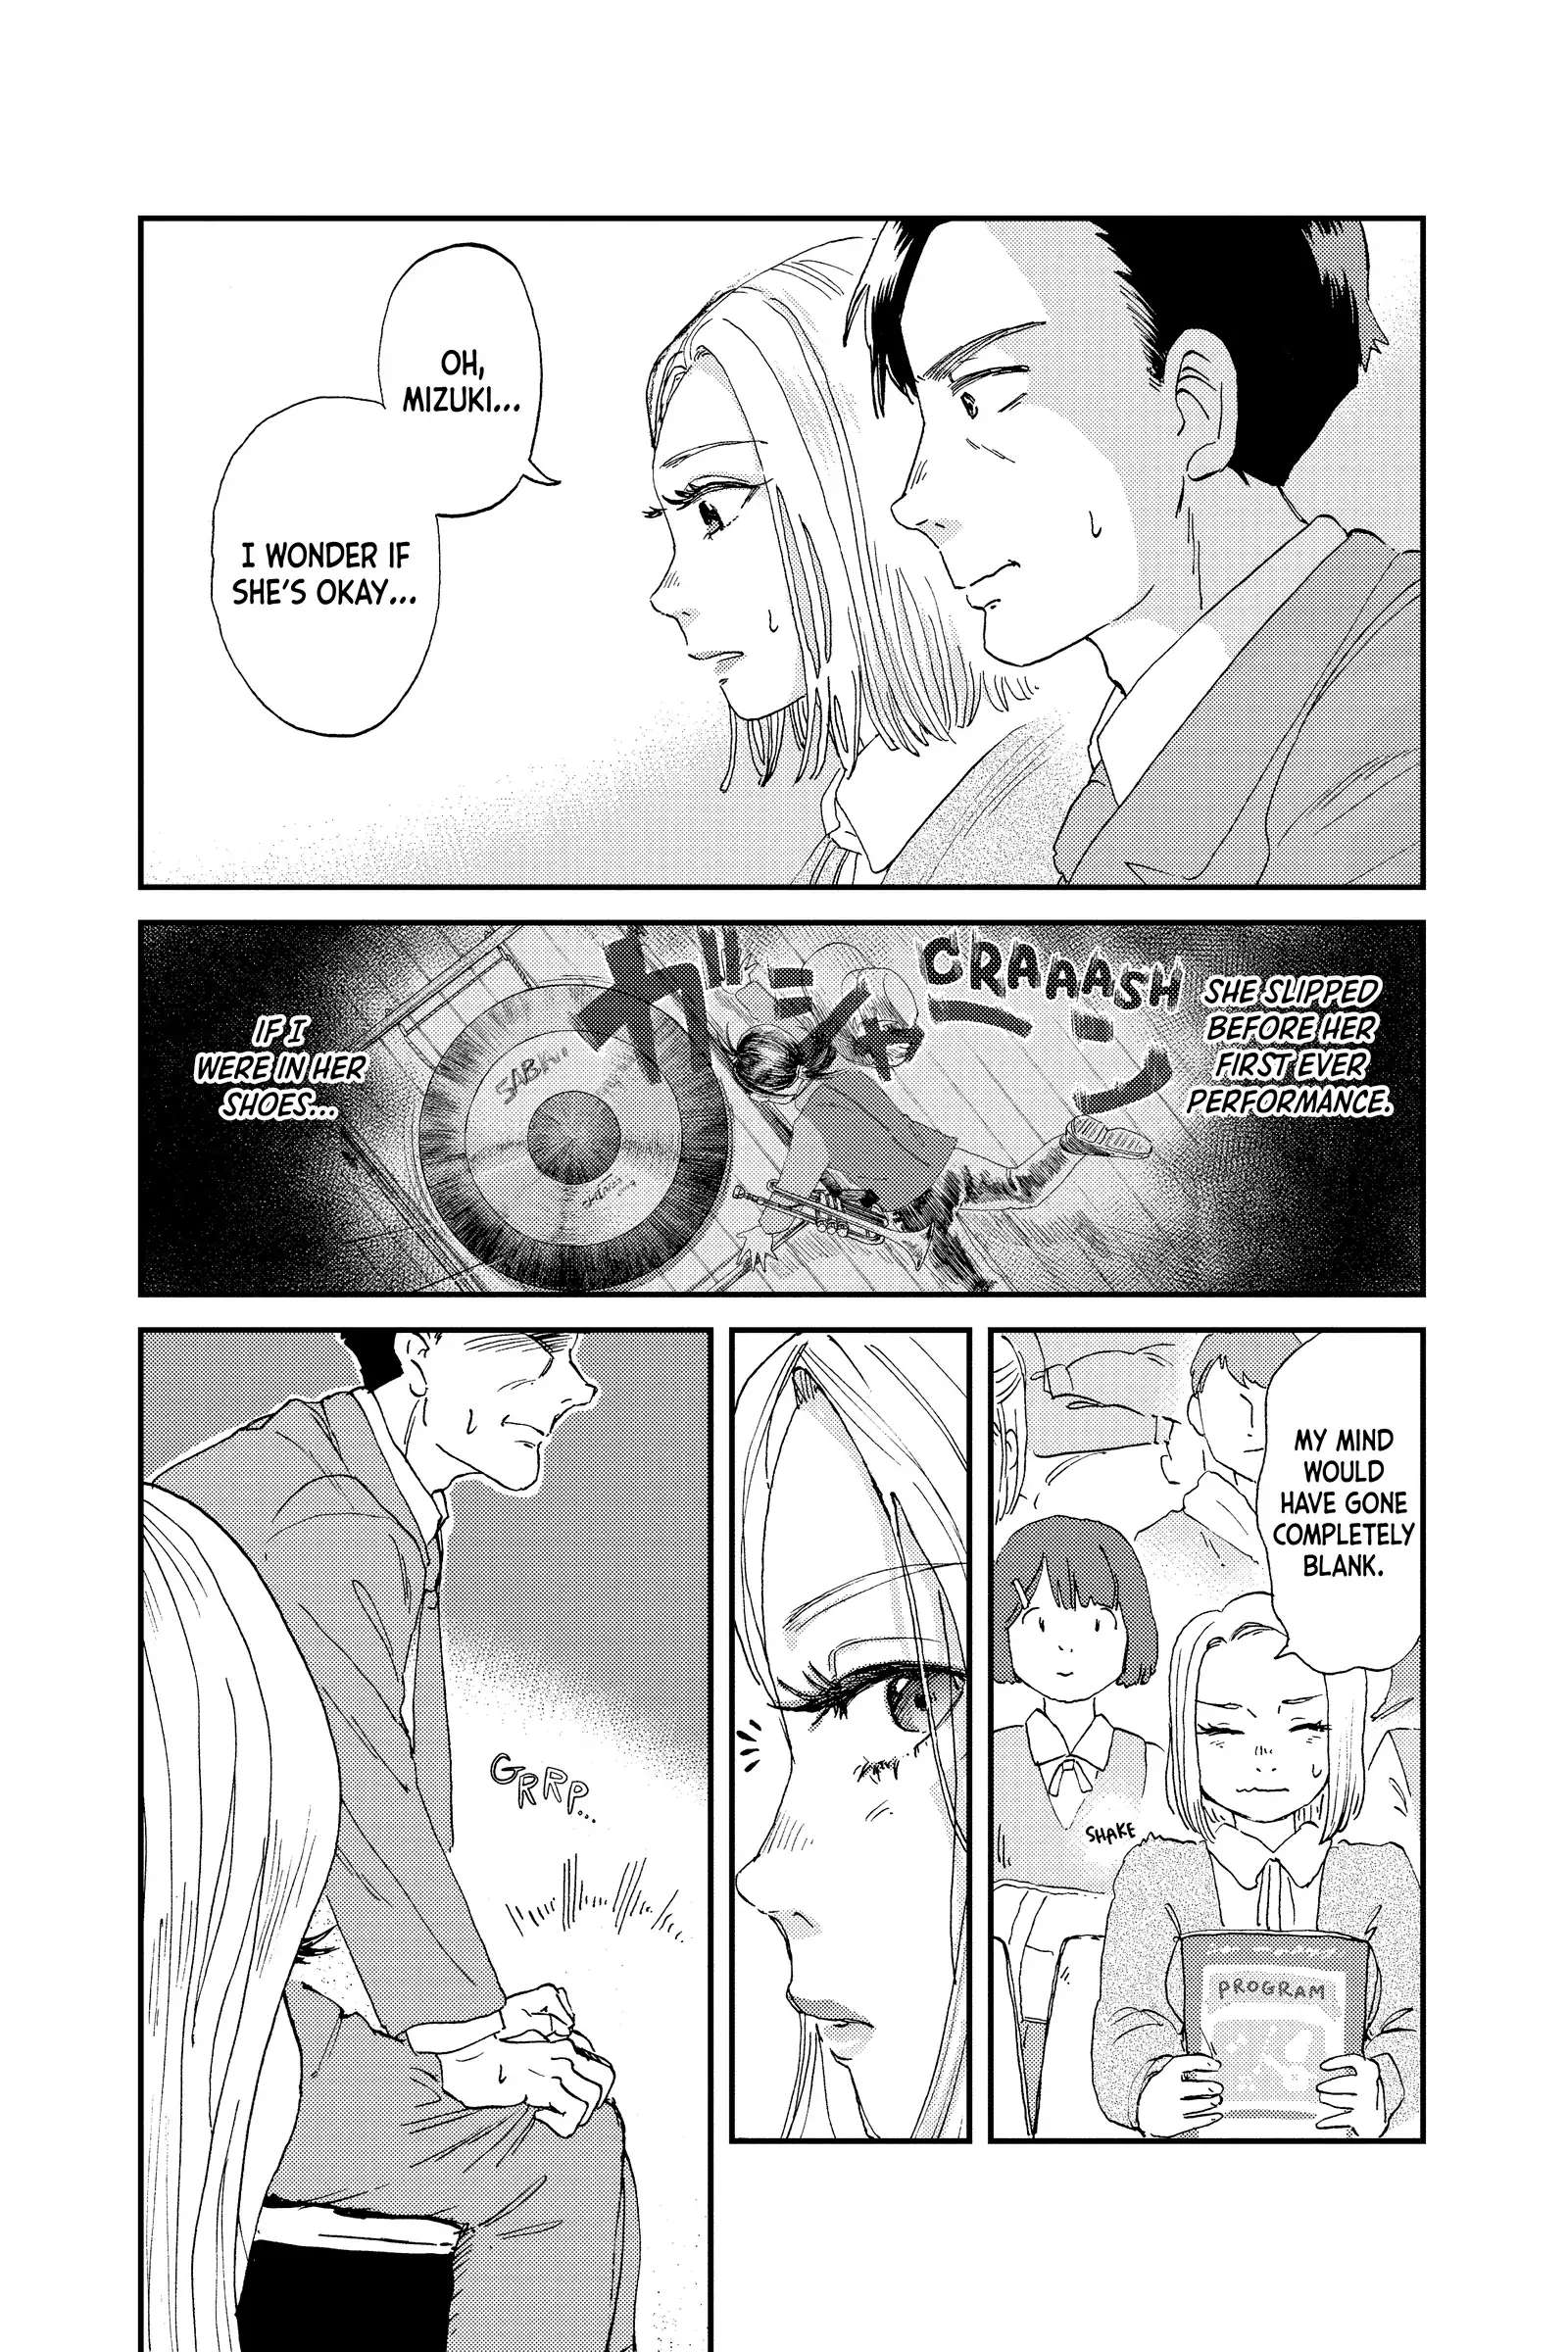 Mikazuki March - chapter 8 - #5